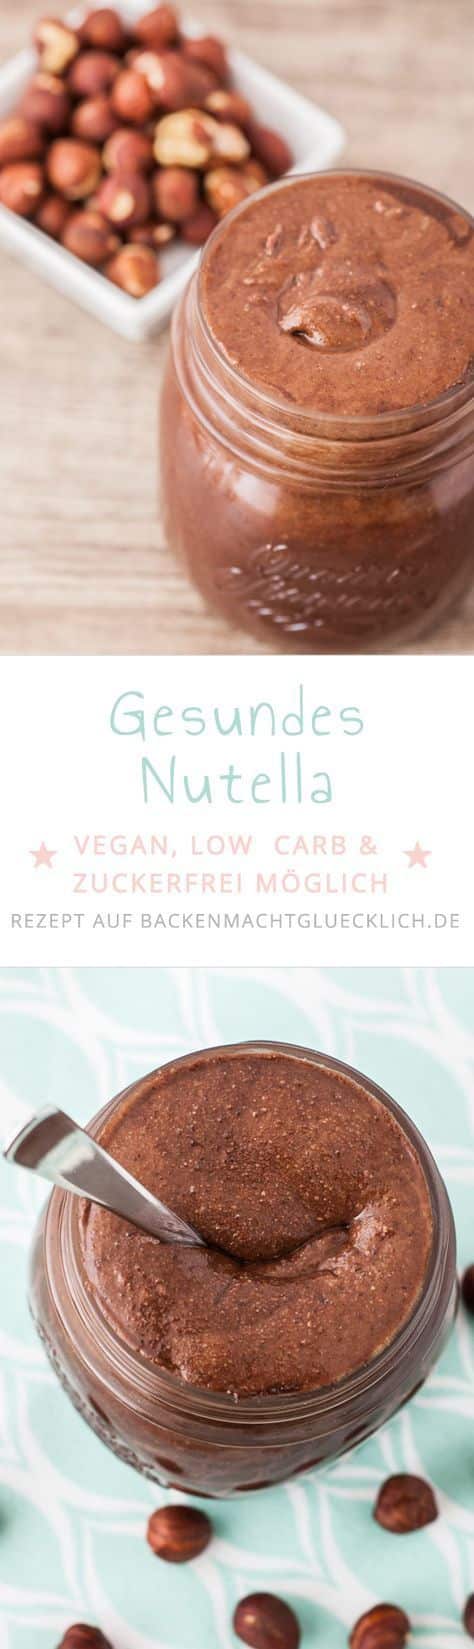 Gesundes Nutella selbermachen: Mit diesem einfach Rezept für Nuss-Nougat-Creme funktioniert´s! Egal, ob als Low Carb Nutella, veganes Nutella, zuckerfrei oder ohne Nüsse